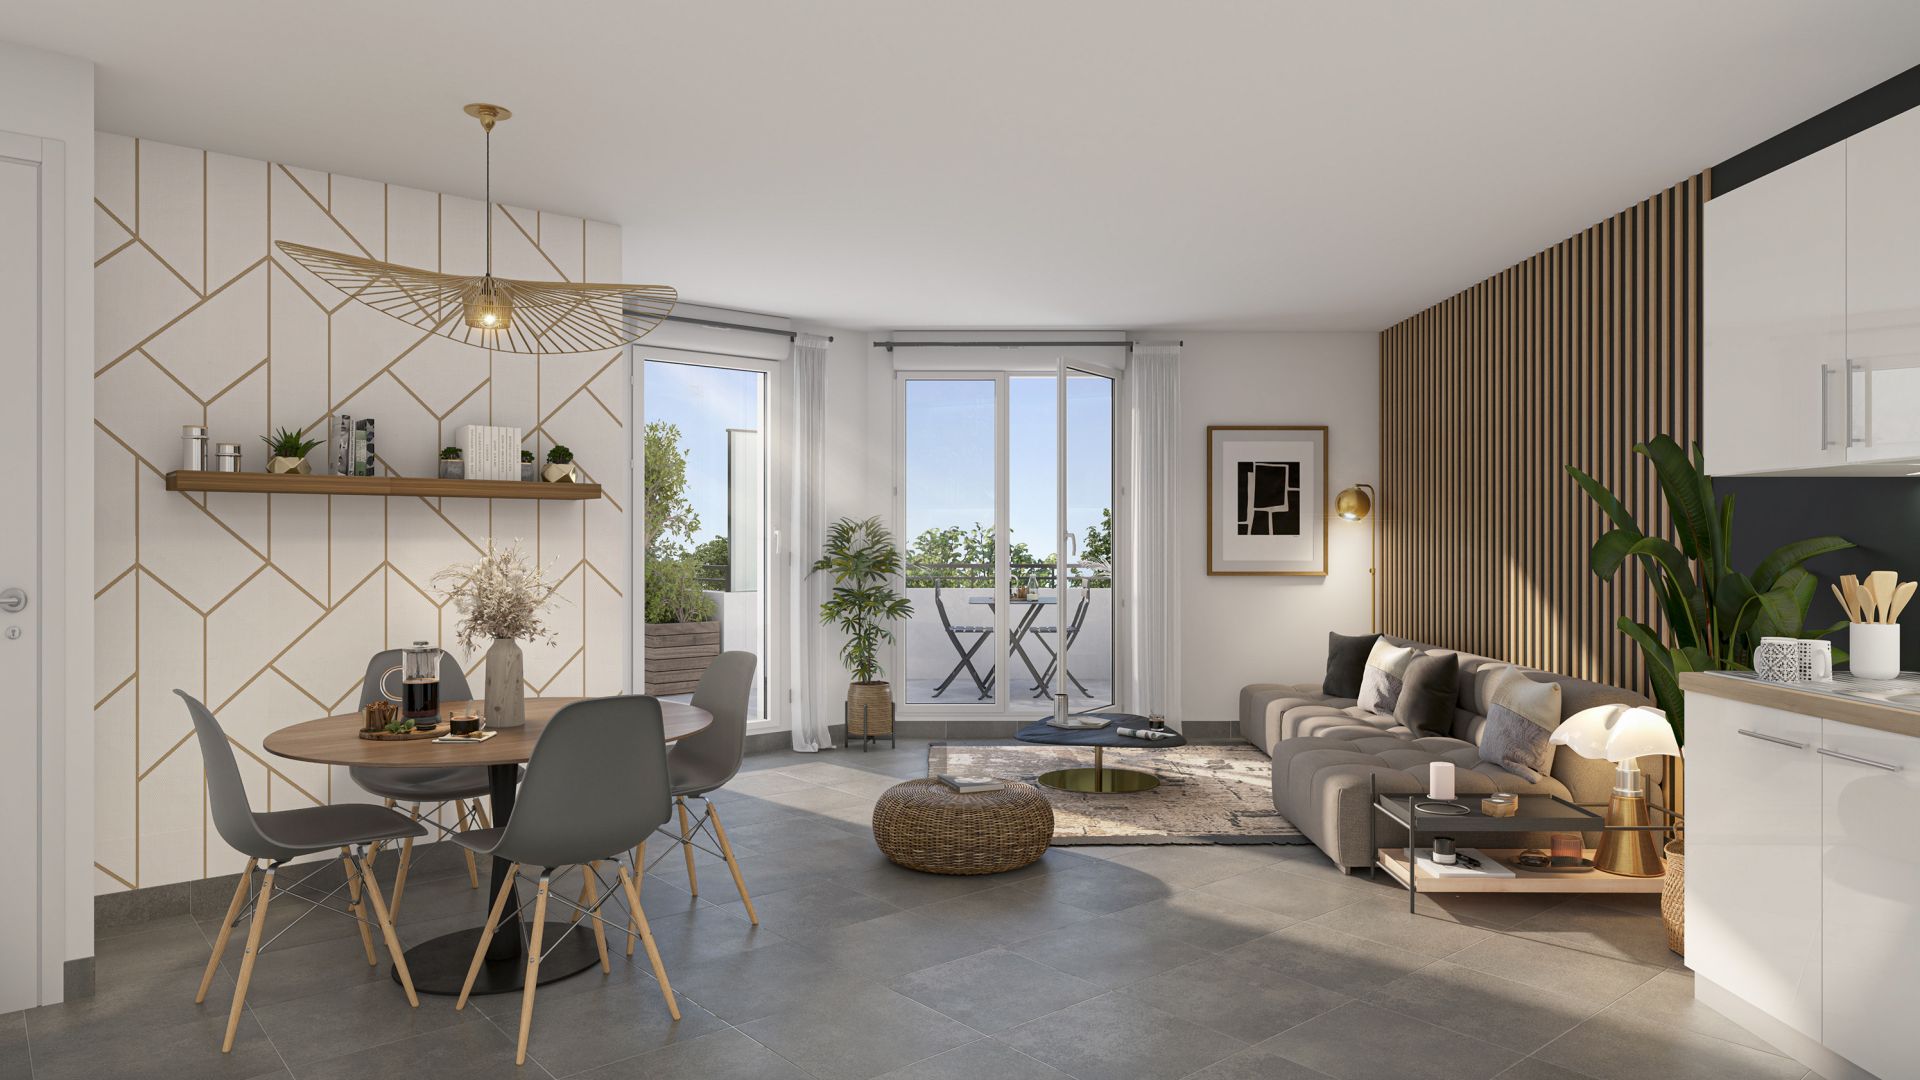 Greencity immobilier - achat appartements neufs du T1 au T3 - Résidence Le Fairway - 93270 Sevran